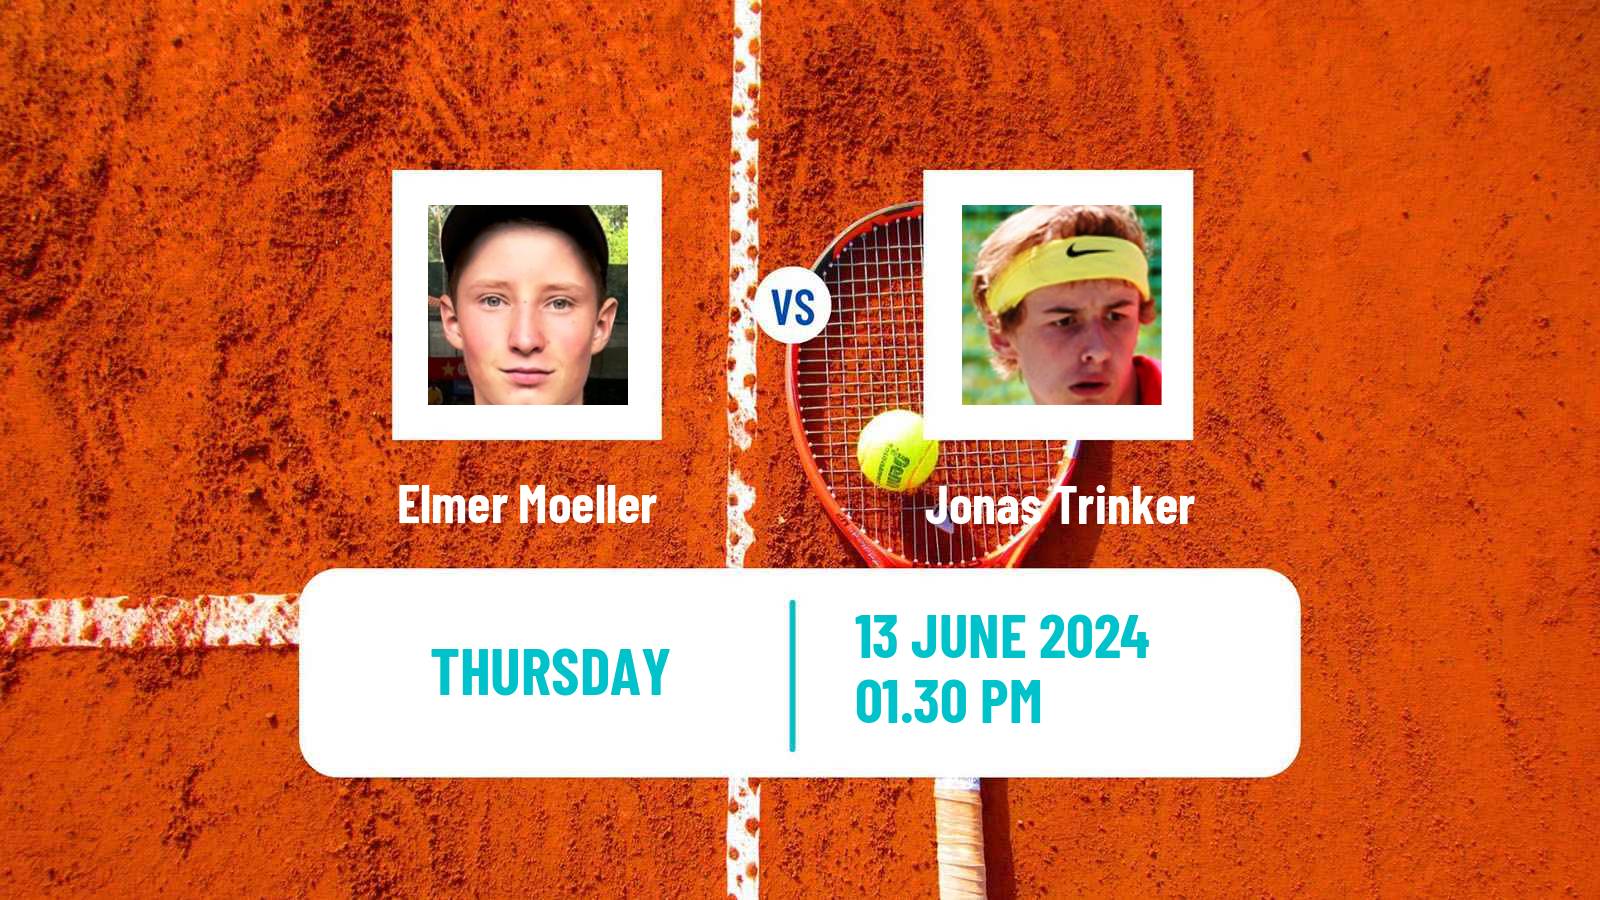 Tennis ITF M25 Aarhus Men Elmer Moeller - Jonas Trinker